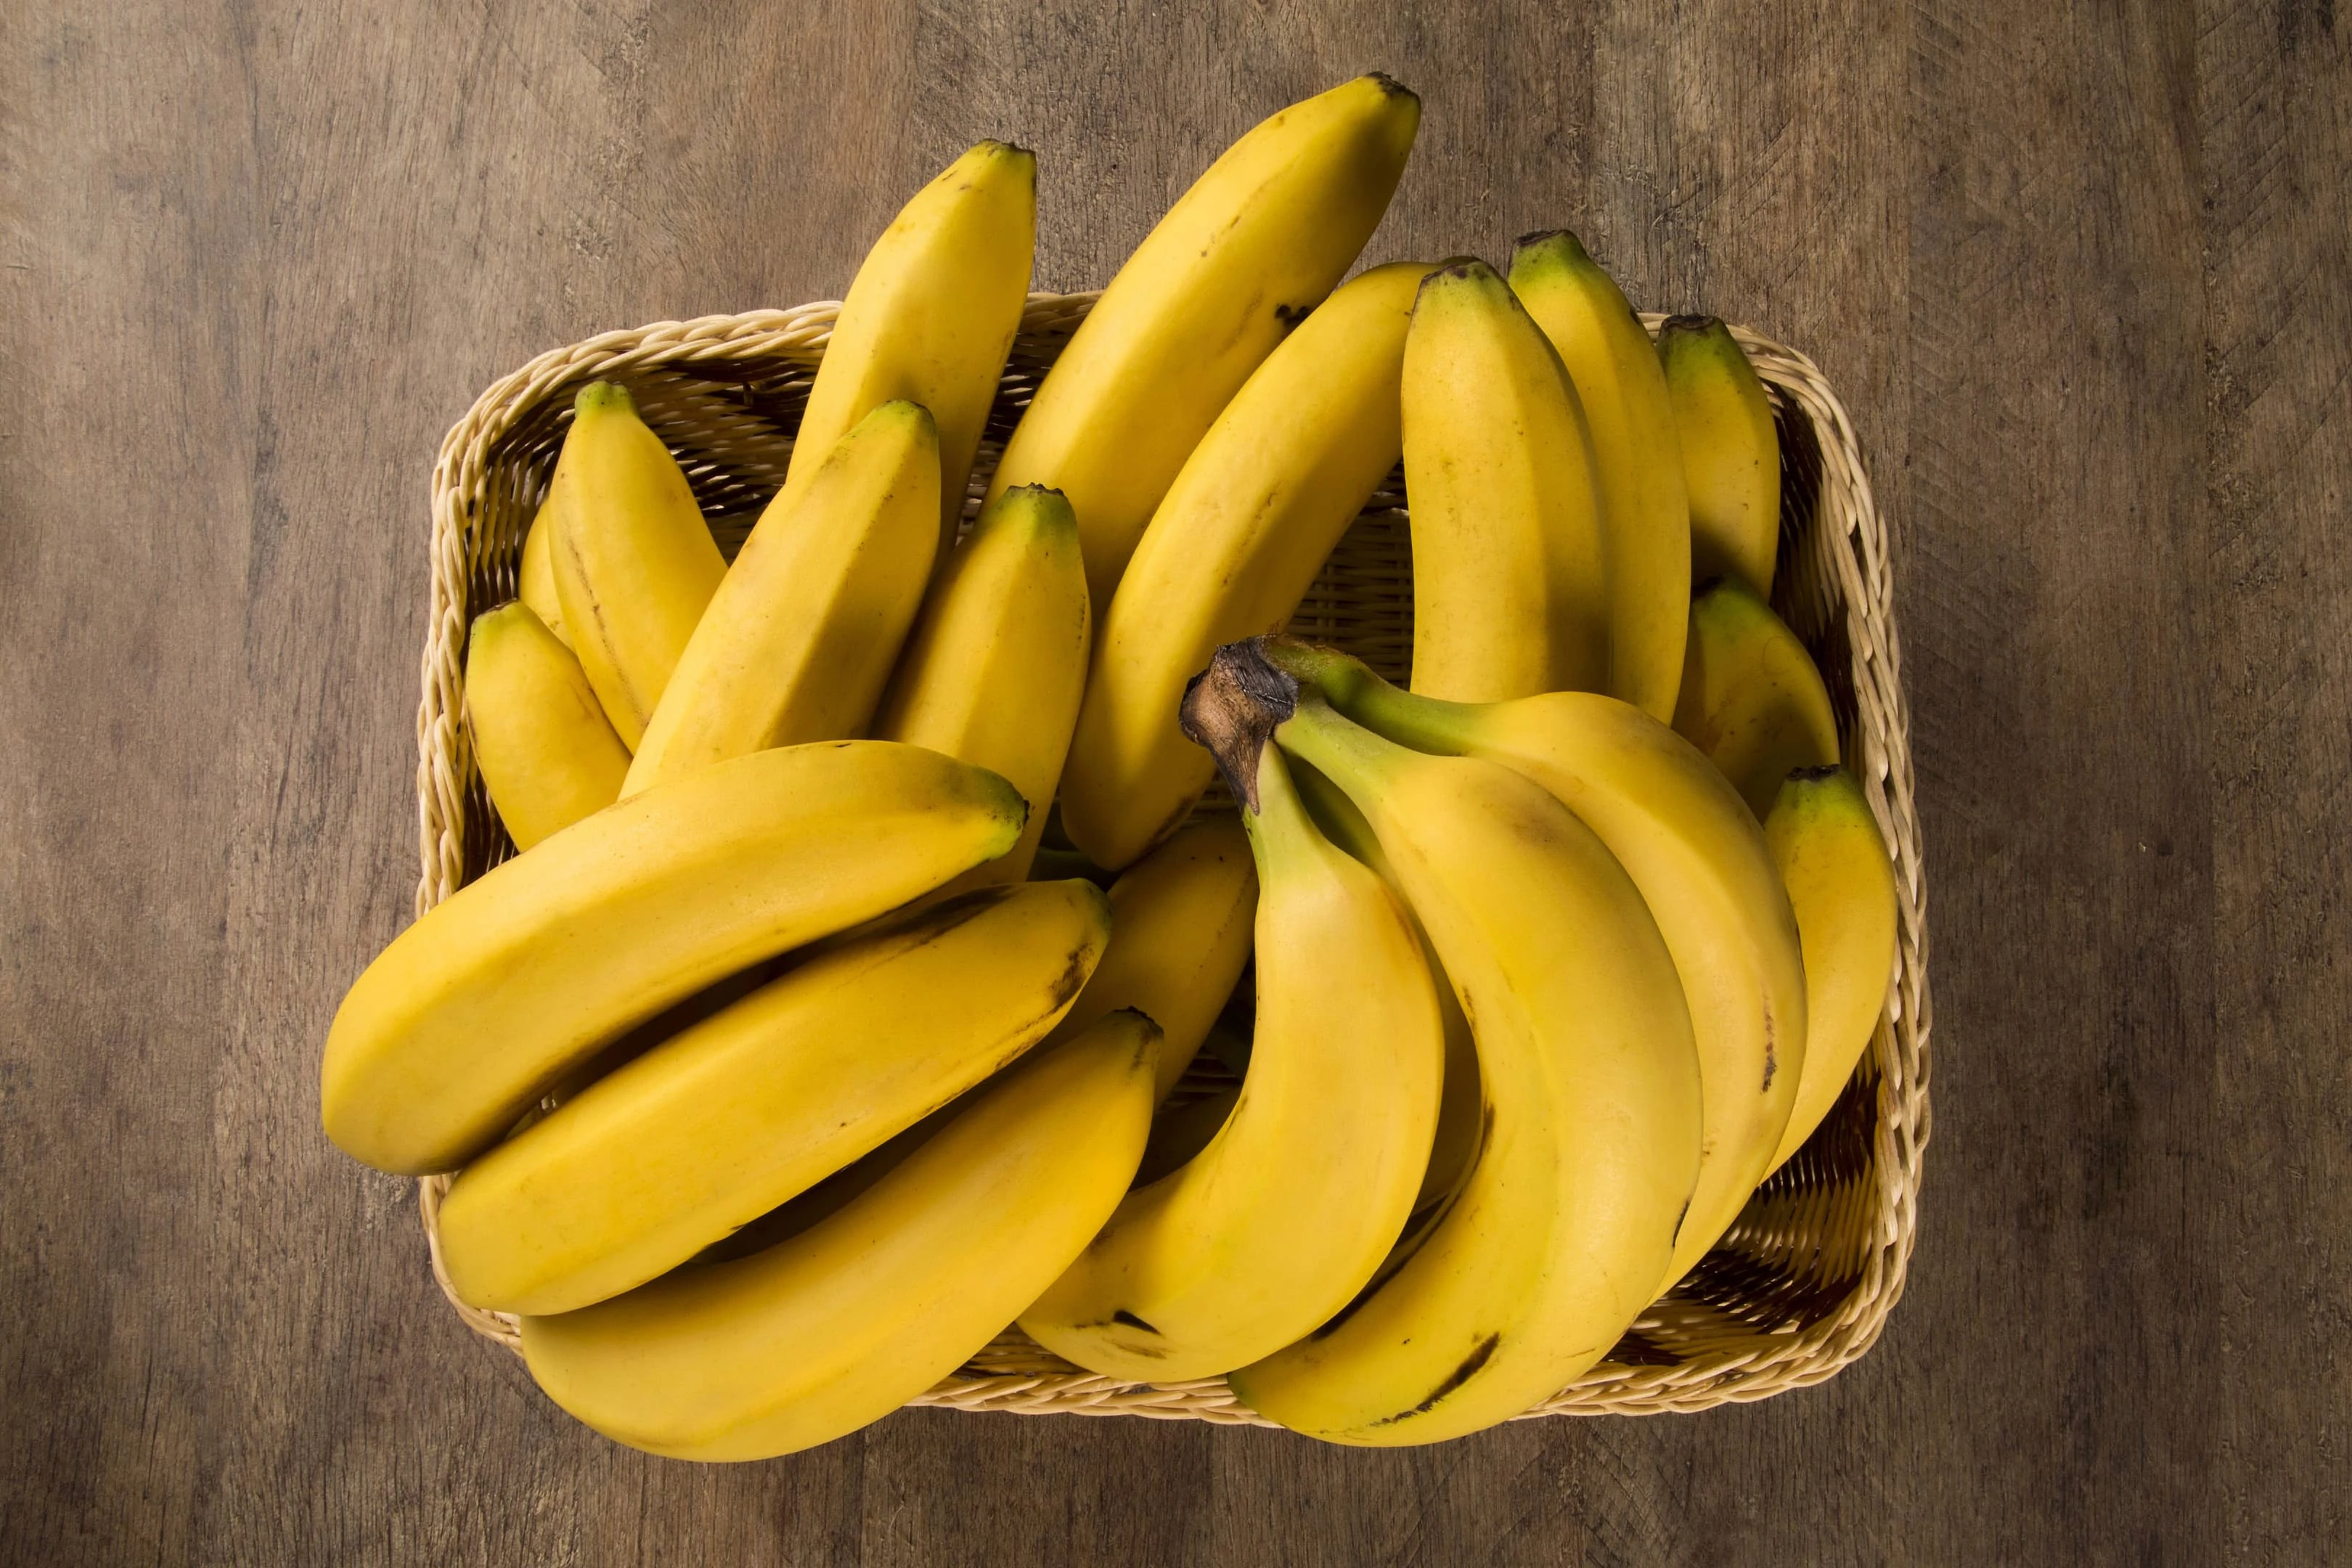 Bunch of bananas in basket